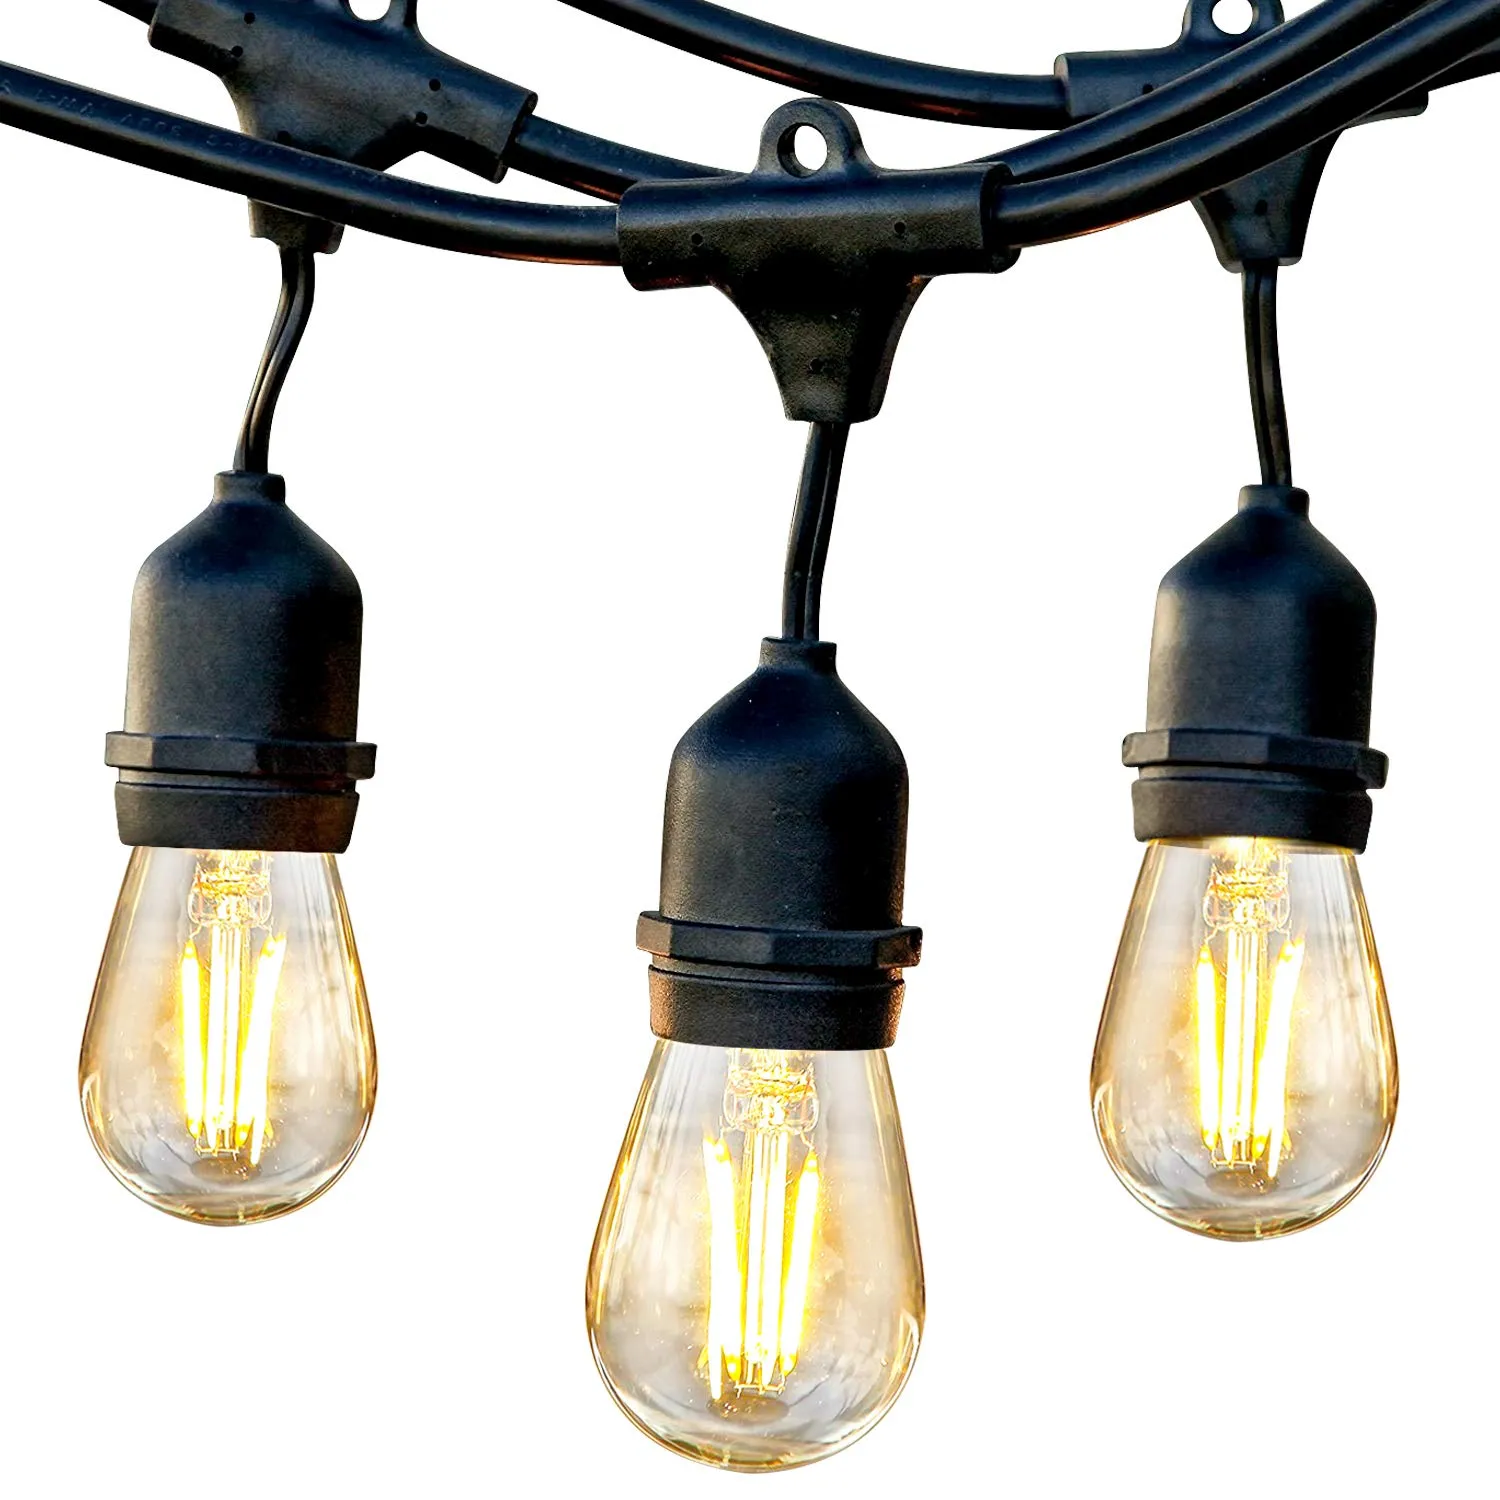 12 ampoules solaires guirlande lumineuse étanche Edison 48 pieds